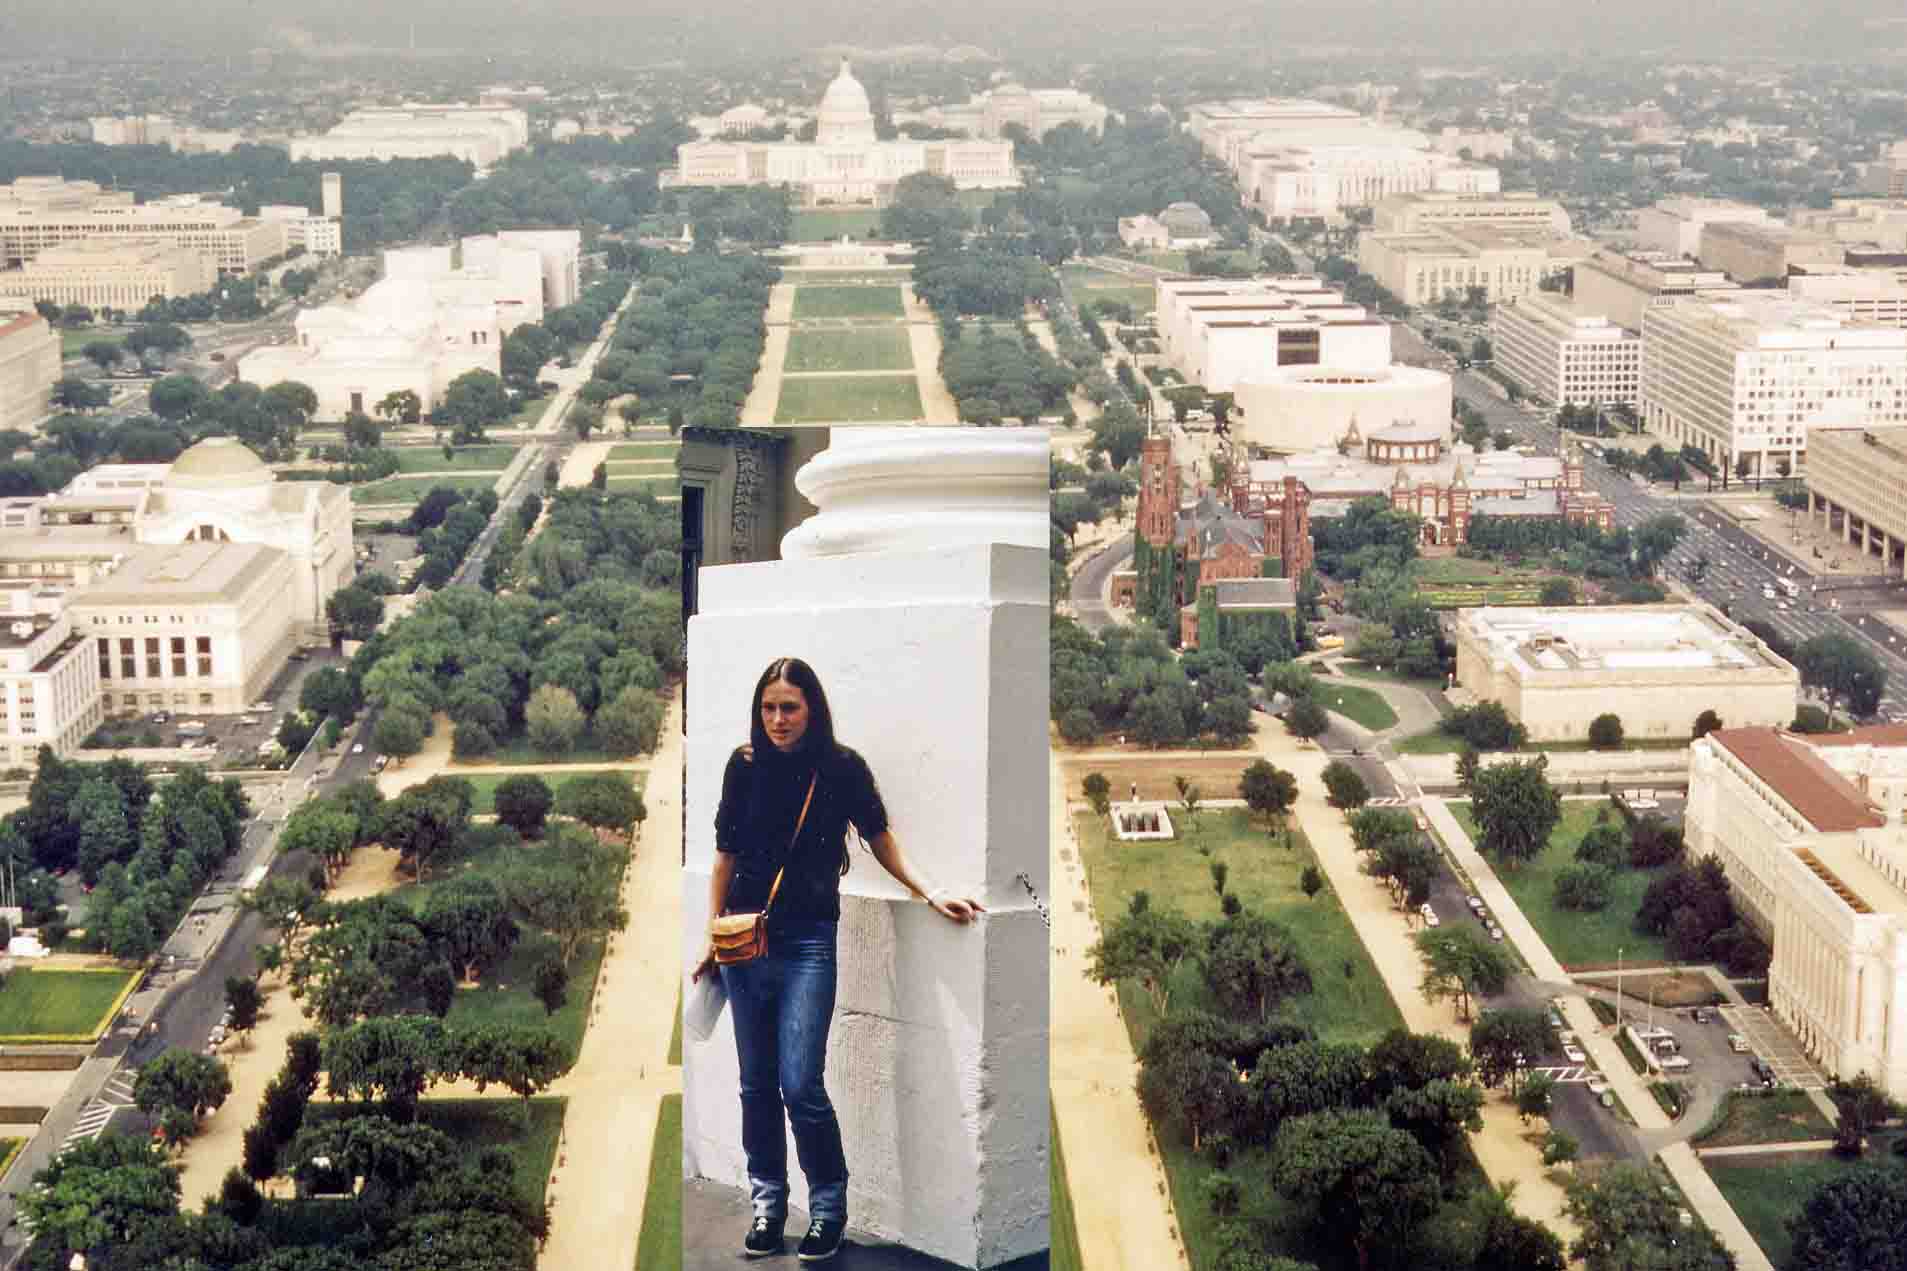 White House in Washington 1981